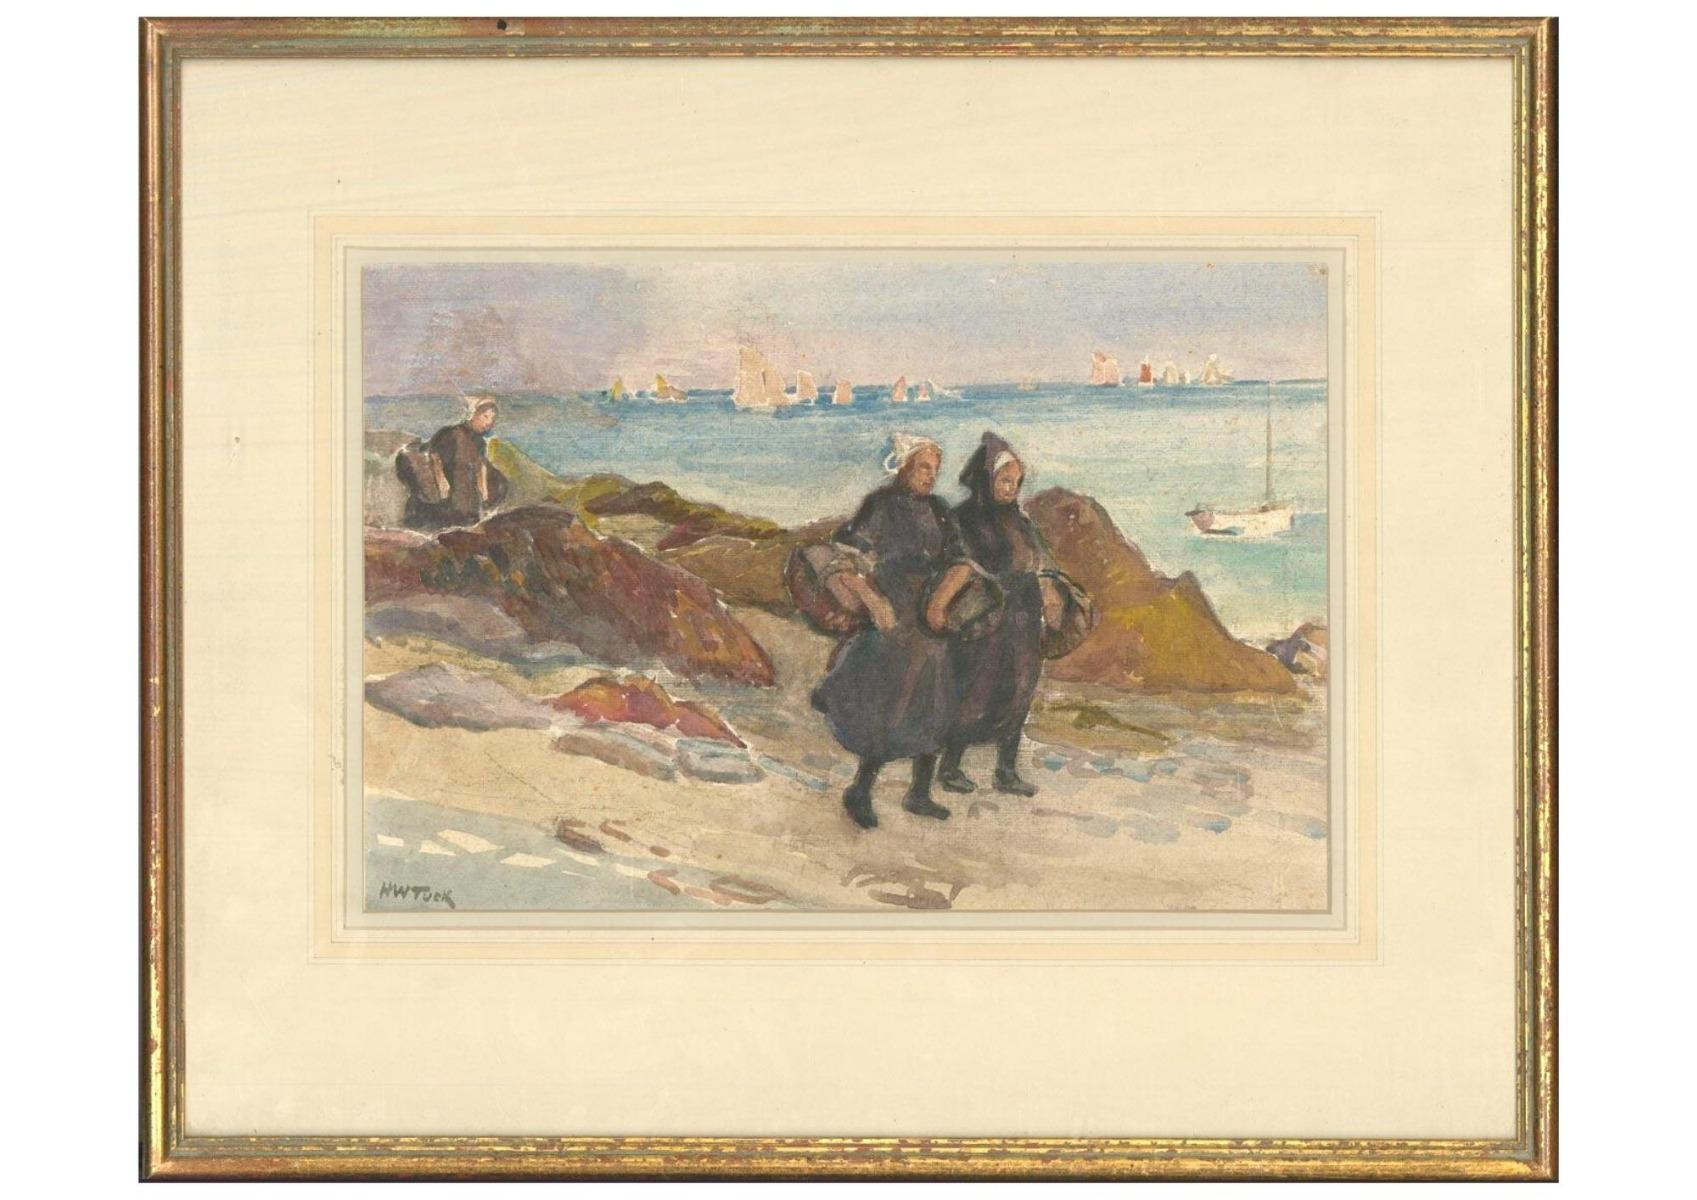 Une scène charmante représentant des femmes se promenant le long de la côte avec des paniers à la main. On peut voir des voiliers au loin sur la mer calme. Signé en bas à droite. On a tissé.




